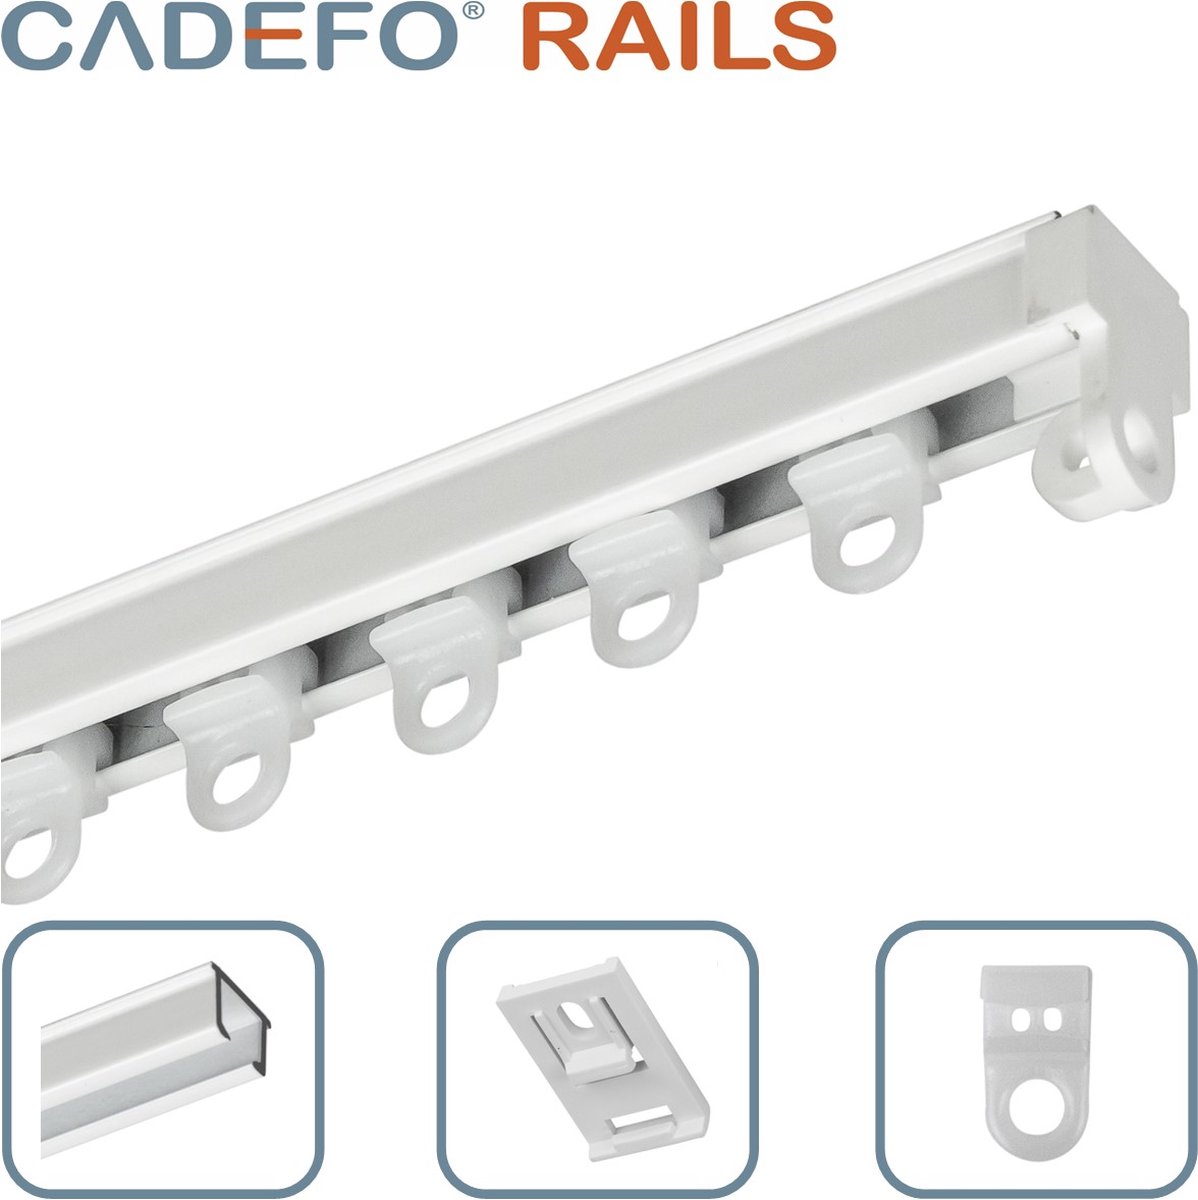 CADEFO RAILS (151 - 200 cm) Gordijnrails - Compleet op maat! - UIT 1 STUK - Leverbaar tot 6 meter - Plafondbevestiging - Lengte 152 cm